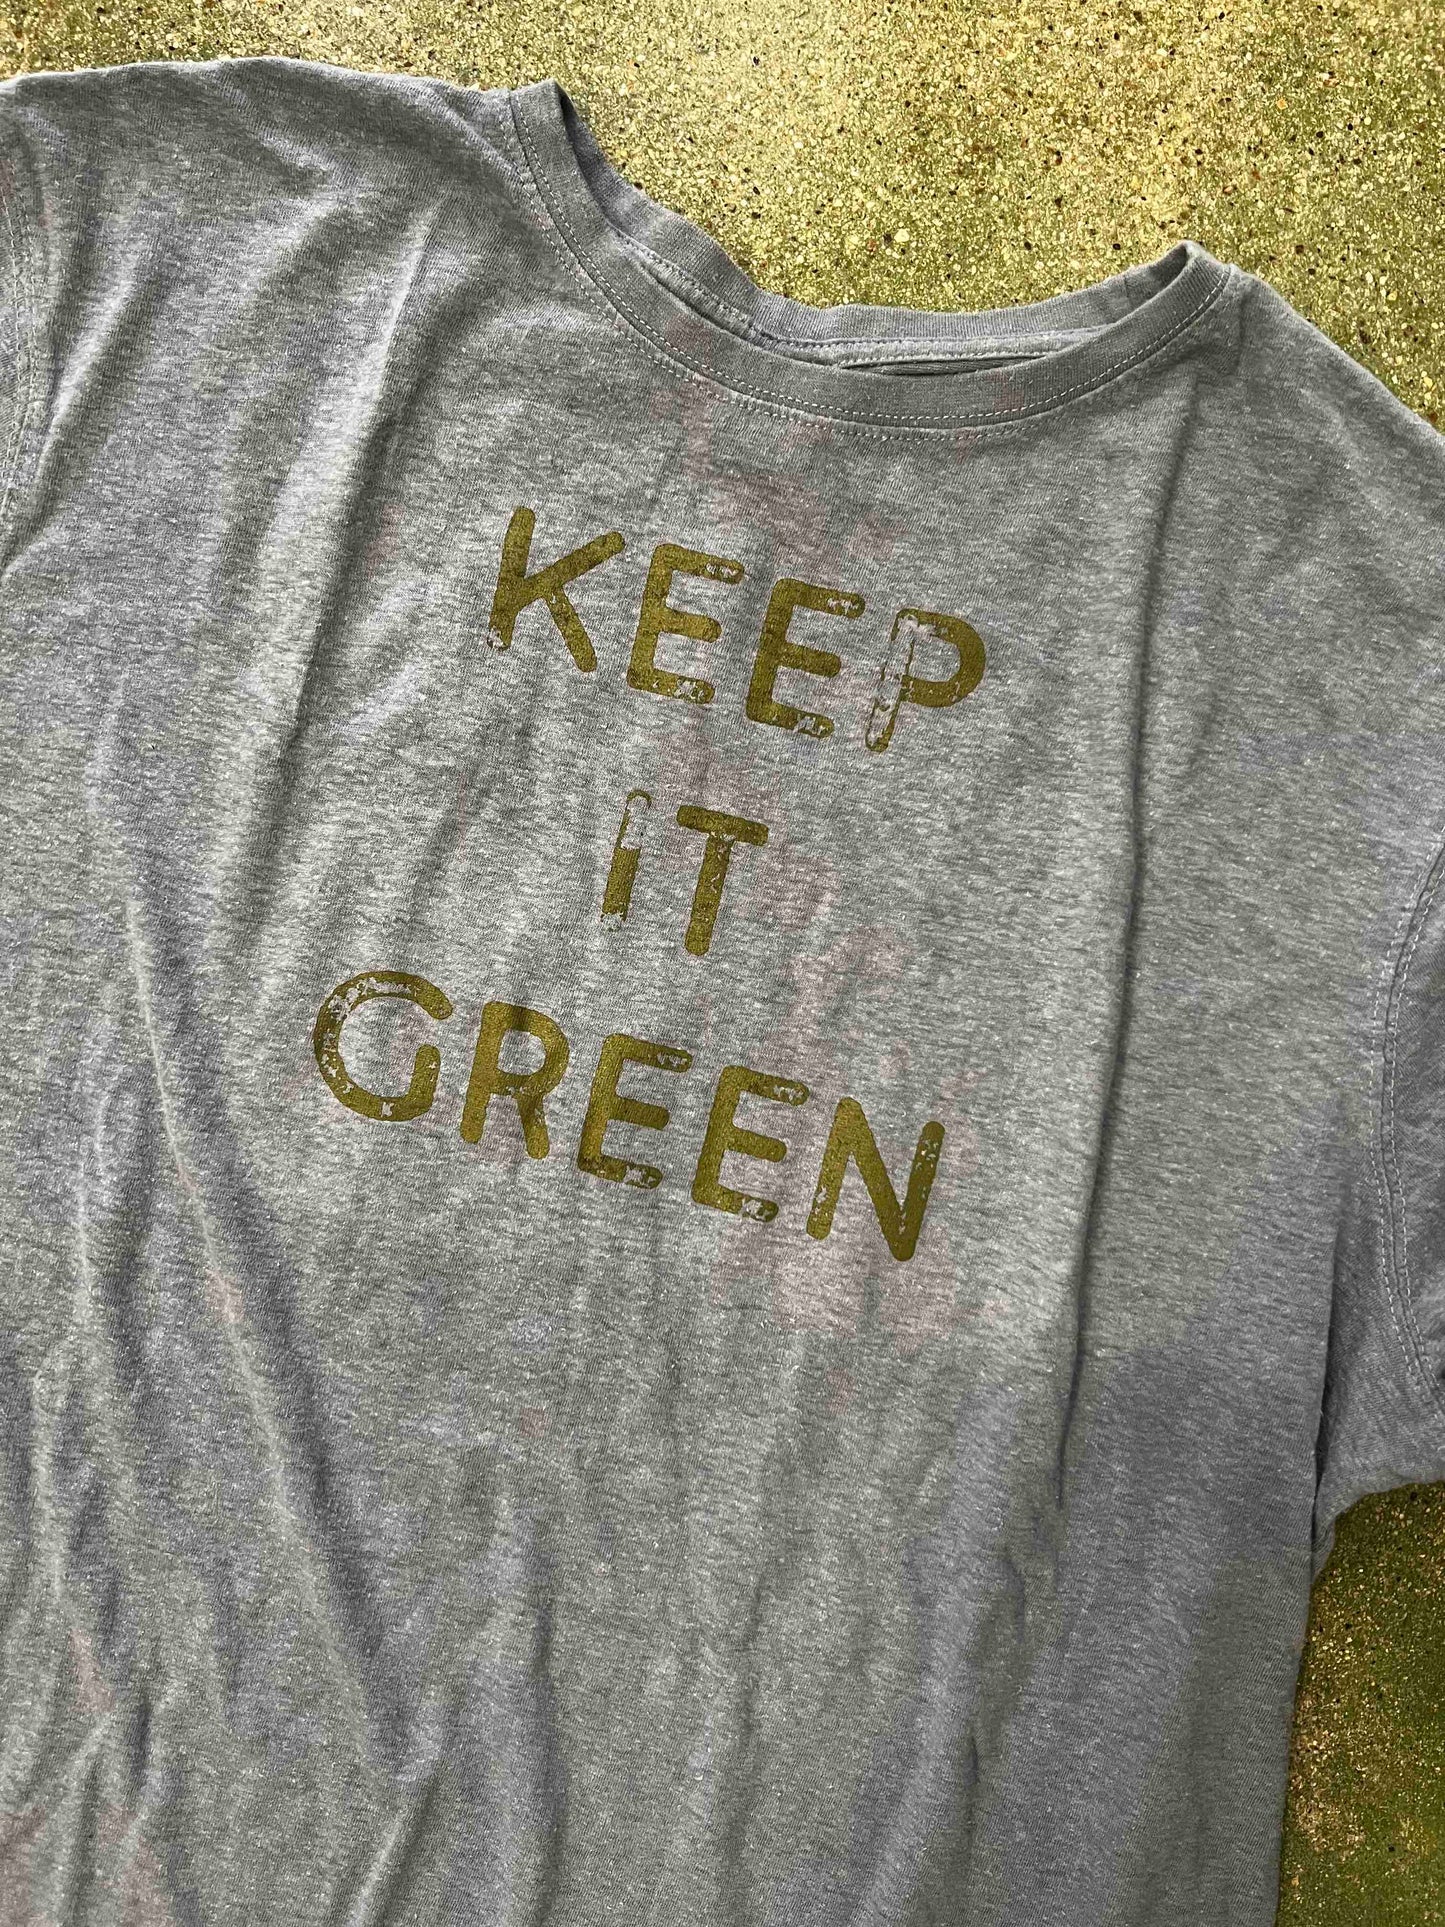 "Keep It Green" Santa Barbara Hives T-shirt